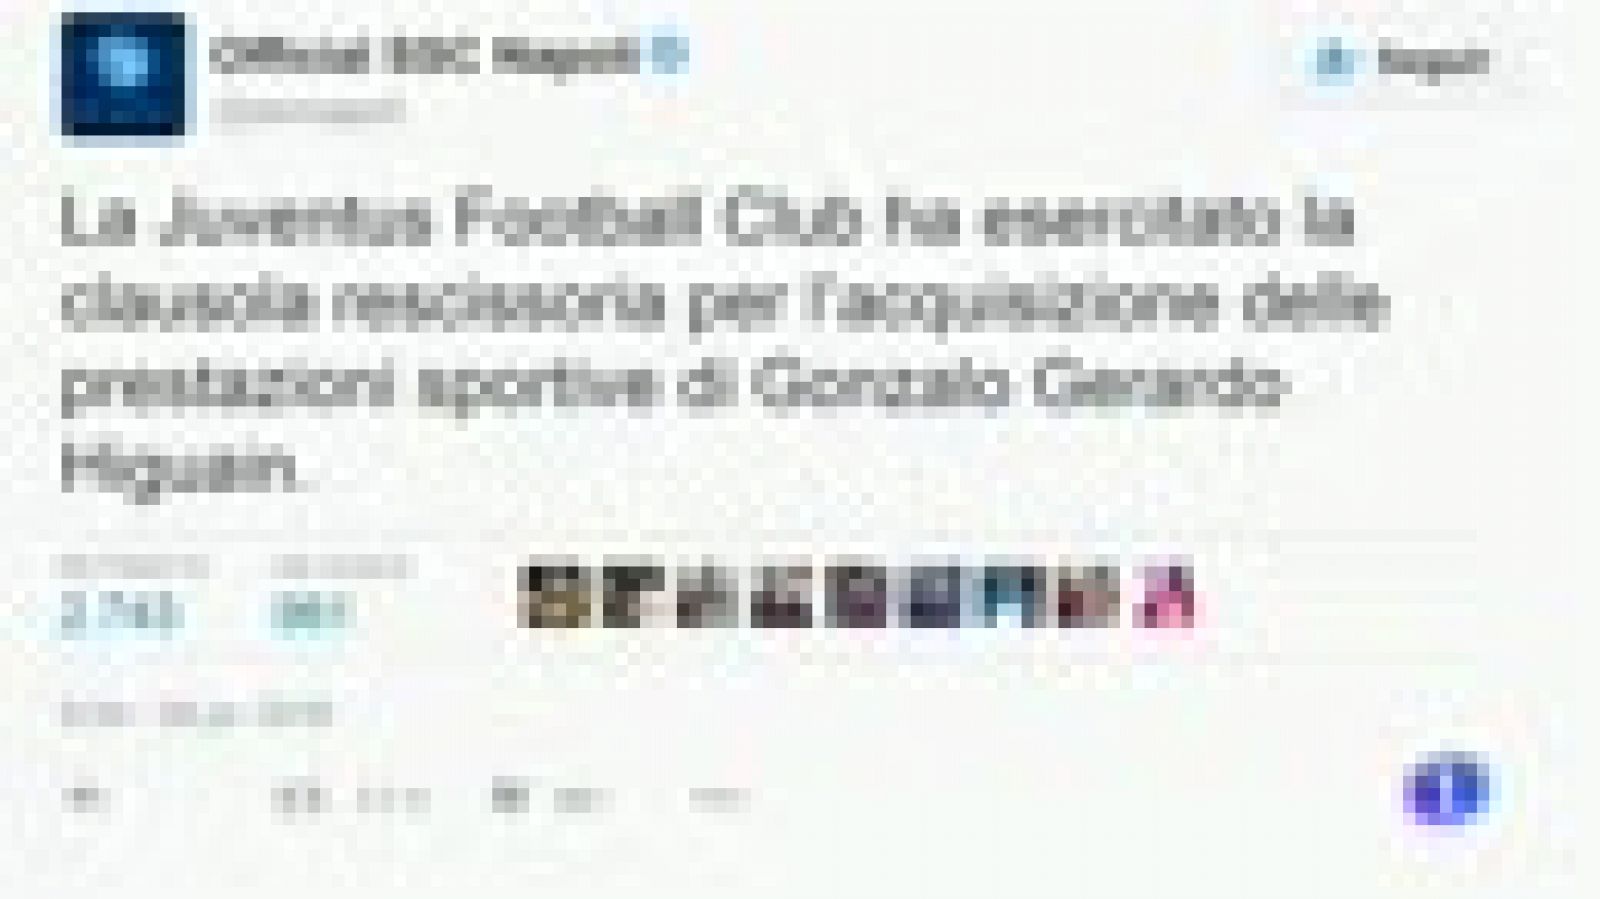 La Juventus ha depositado la cláusula de 90 millones de euros al Nápoles para hacerse con los servicios del delantero argentino Gonzalo Higuaín, como confirmó el club napolitano. La noticiala destapaba en primer lugar la Serie A, al inscribir al ariete como jugador de la Vecchia Signora.